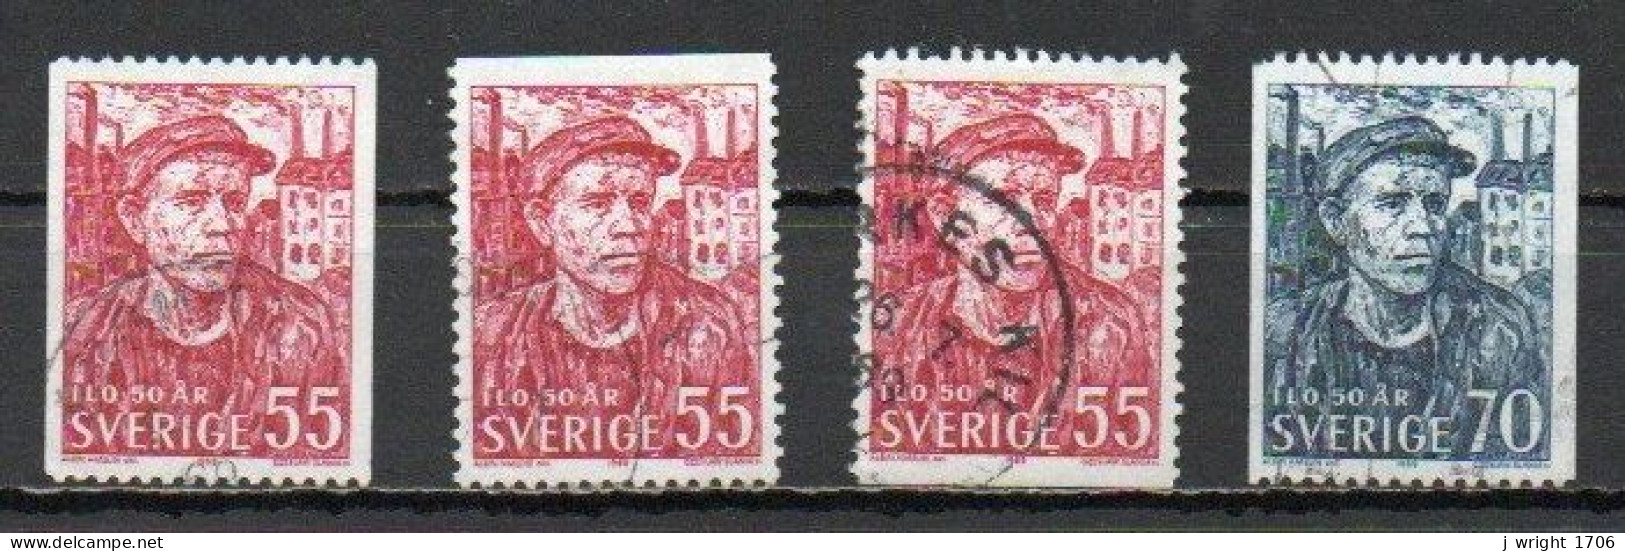 Sweden, 1969, ILO 50th Anniv, Set, USED - Usados